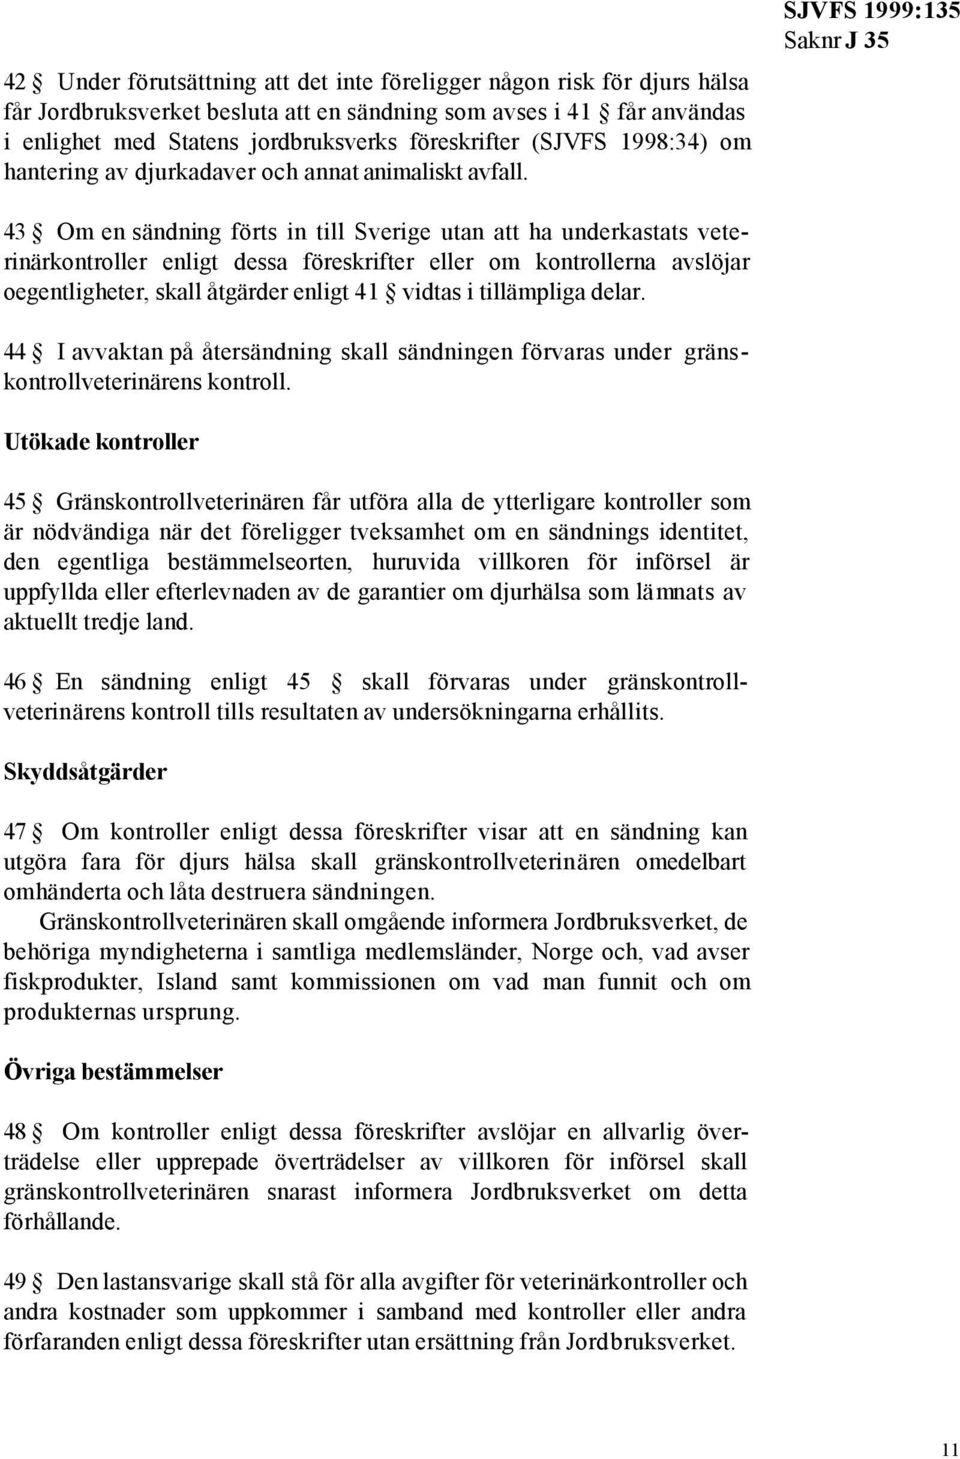 SJVFS 1999:135 43 Om en sändning förts in till Sverige utan att ha underkastats veterinärkontroller enligt dessa föreskrifter eller om kontrollerna avslöjar oegentligheter, skall åtgärder enligt 41